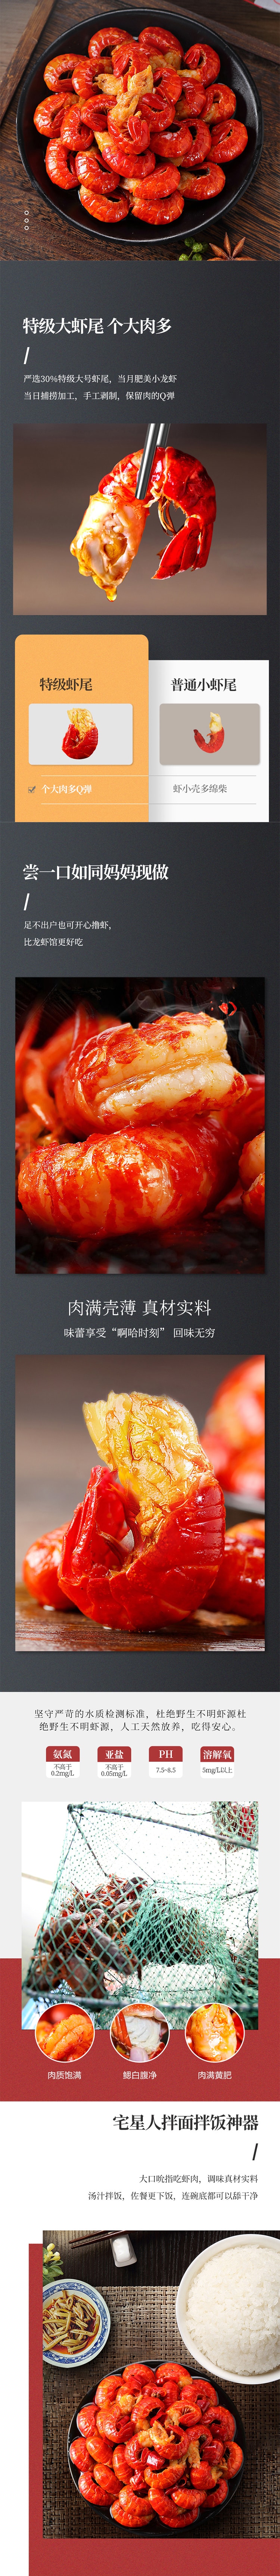 Taste of China Garlic Cooked Crawfish Tail